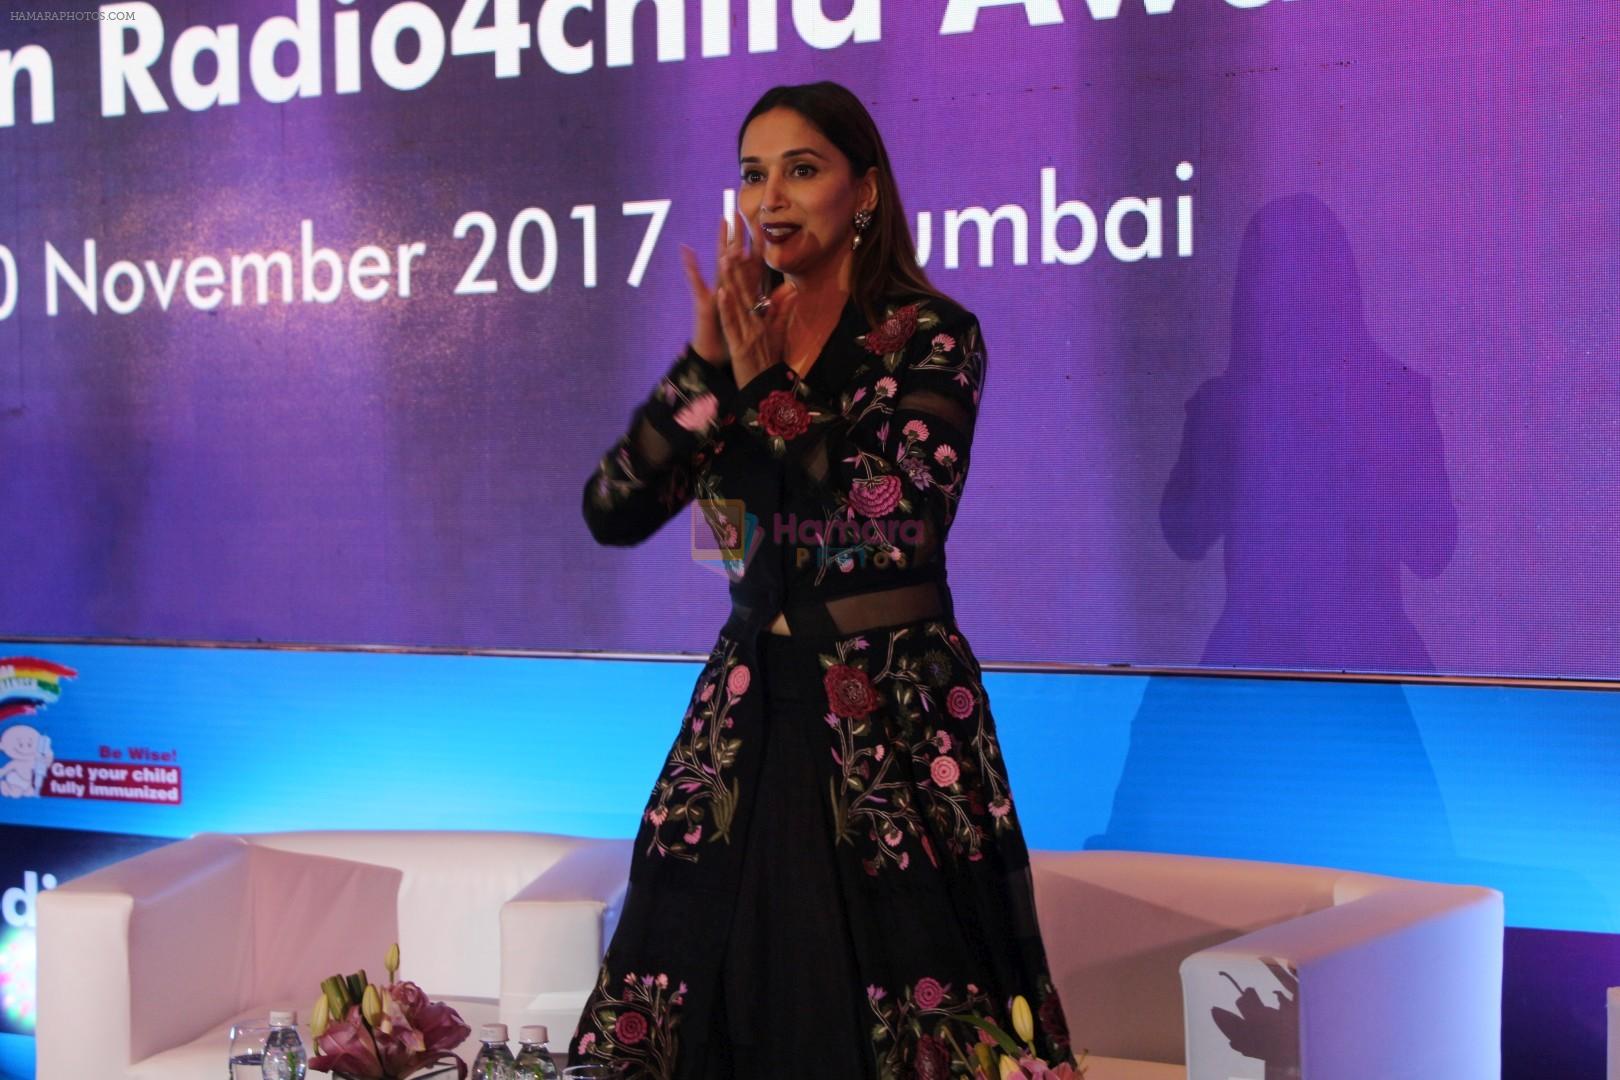 Madhuri Dixit At Redio 4 Child Award 2017 on 10th Nov 2017